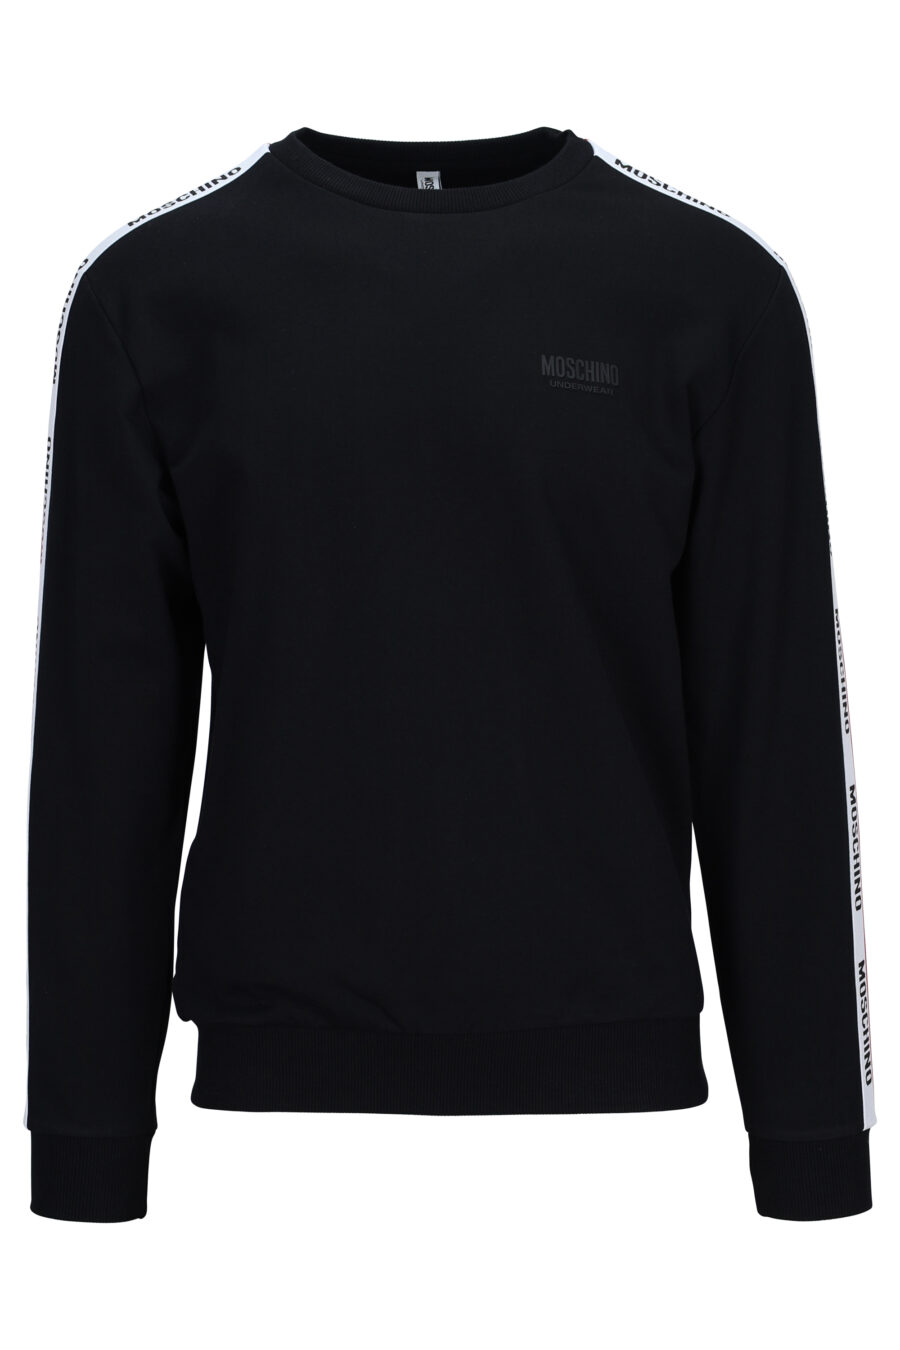 Schwarzes Sweatshirt mit Logoband an den Ärmelseiten - 667113028293